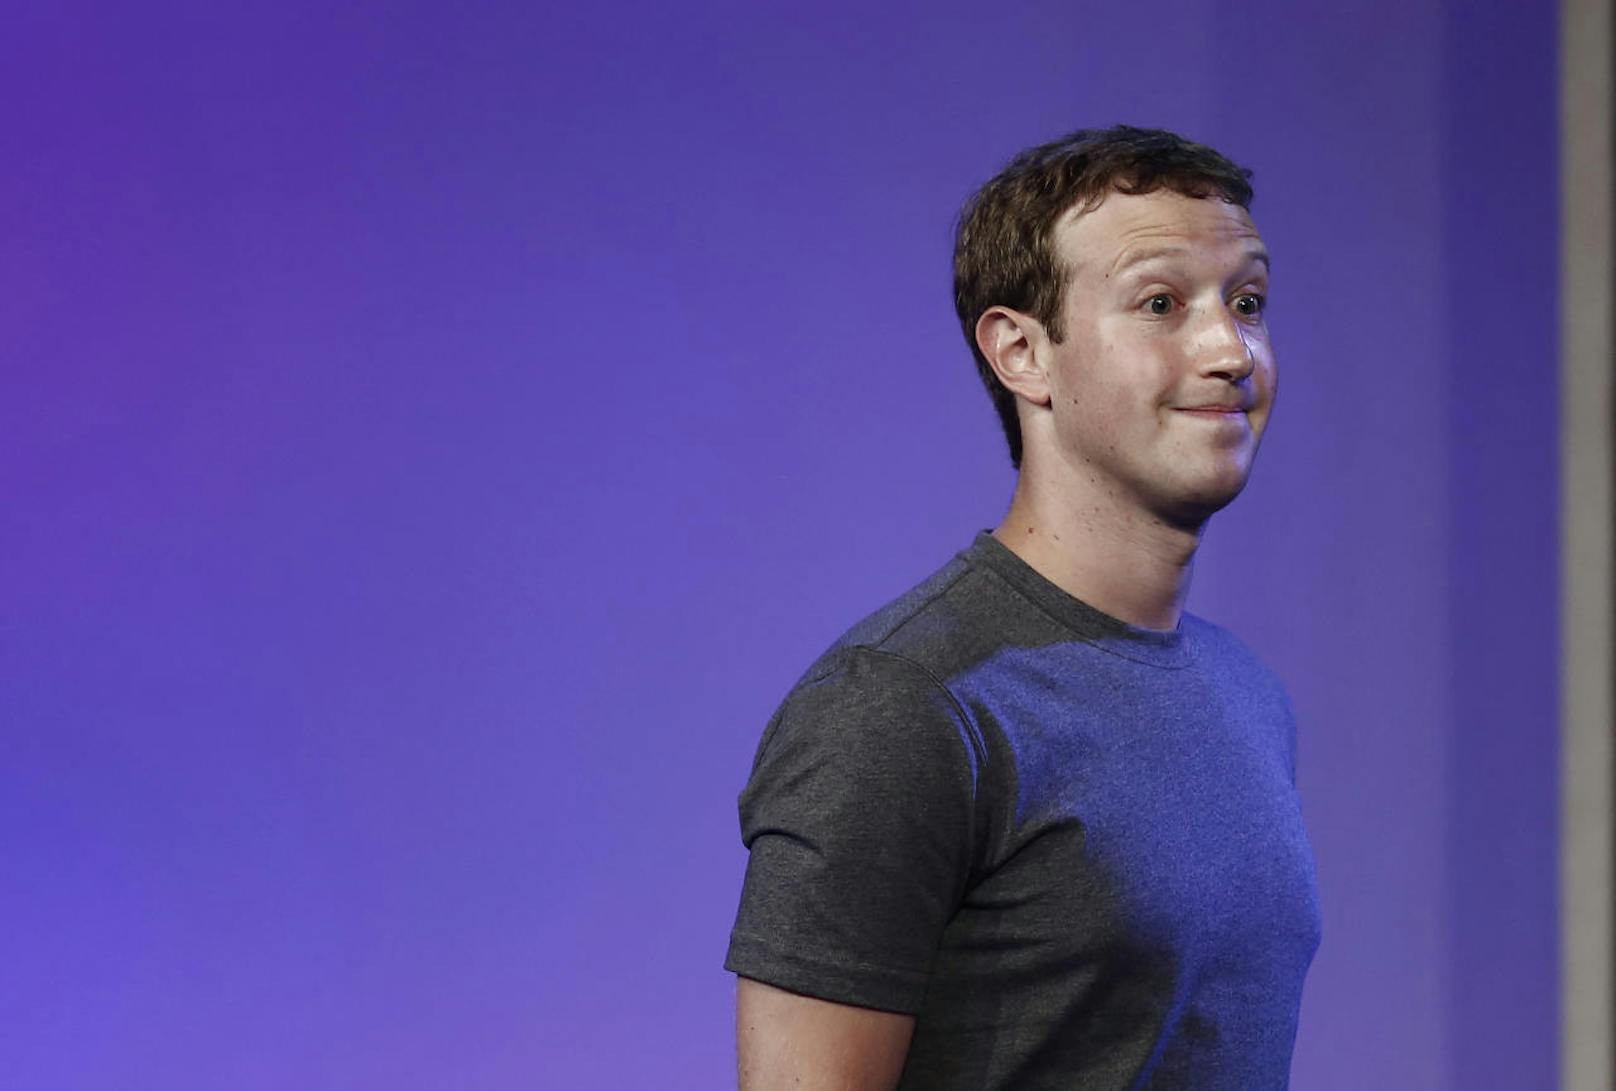 Der Druck auf ihn wächst: Facebook-Chef Mark Zuckerberg nahm Stellung. Facebook werde sich aus "diesem Loch herausgraben", doch werde dies einige Jahre dauern, sagte Zuckerberg